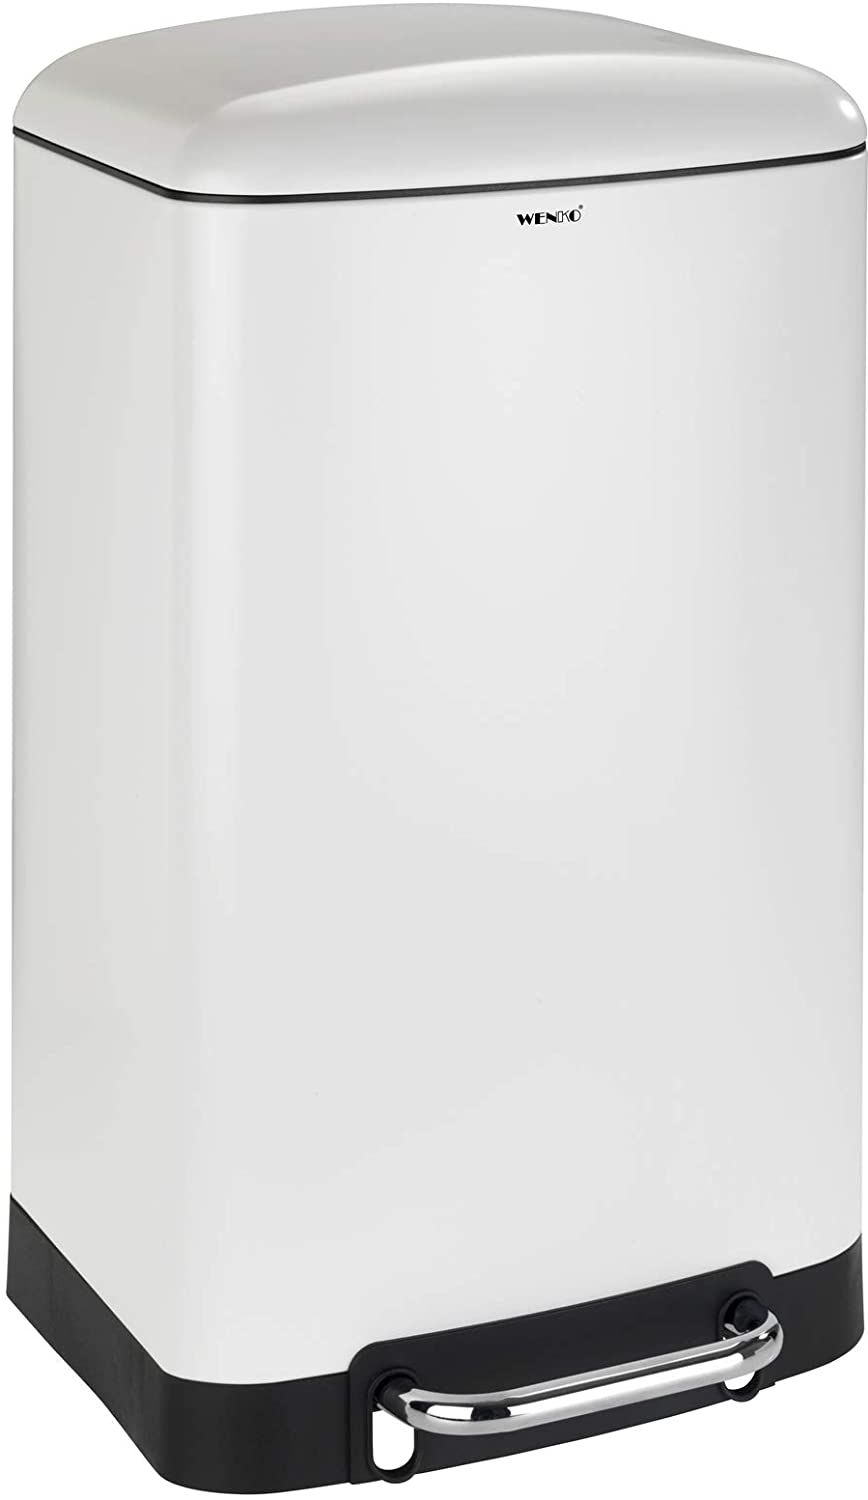 Treteimer Studio Easy-Close Weiß 30 L - Mülleimer mit Absenkautomatik Fassungsvermögen: 30 l, Stahl, 34 x 61 x 32.5 cm, Weiß